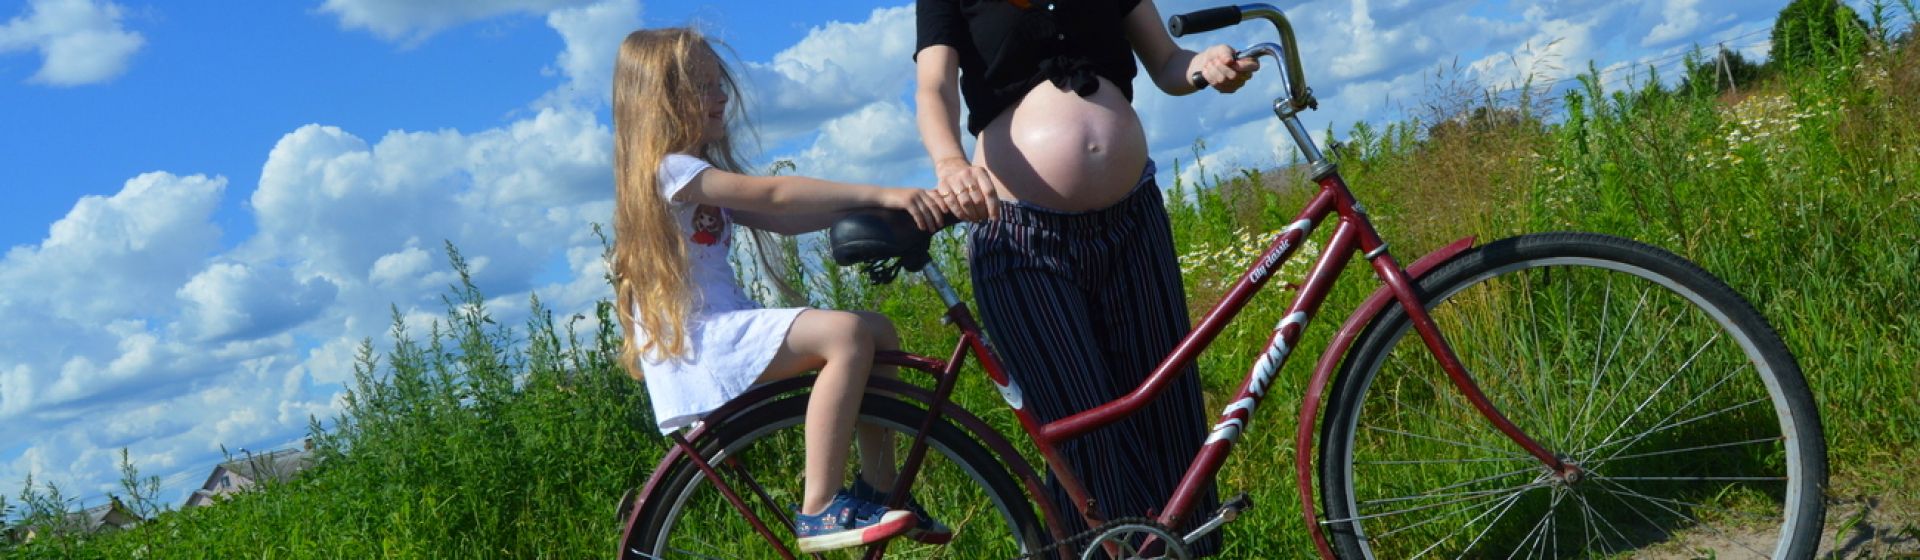 Можно ли беременным кататься на велосипеде? соотношение вреда и пользы: беременность и велосипедные прогулки - автор екатерина данилова - журнал женское мнение